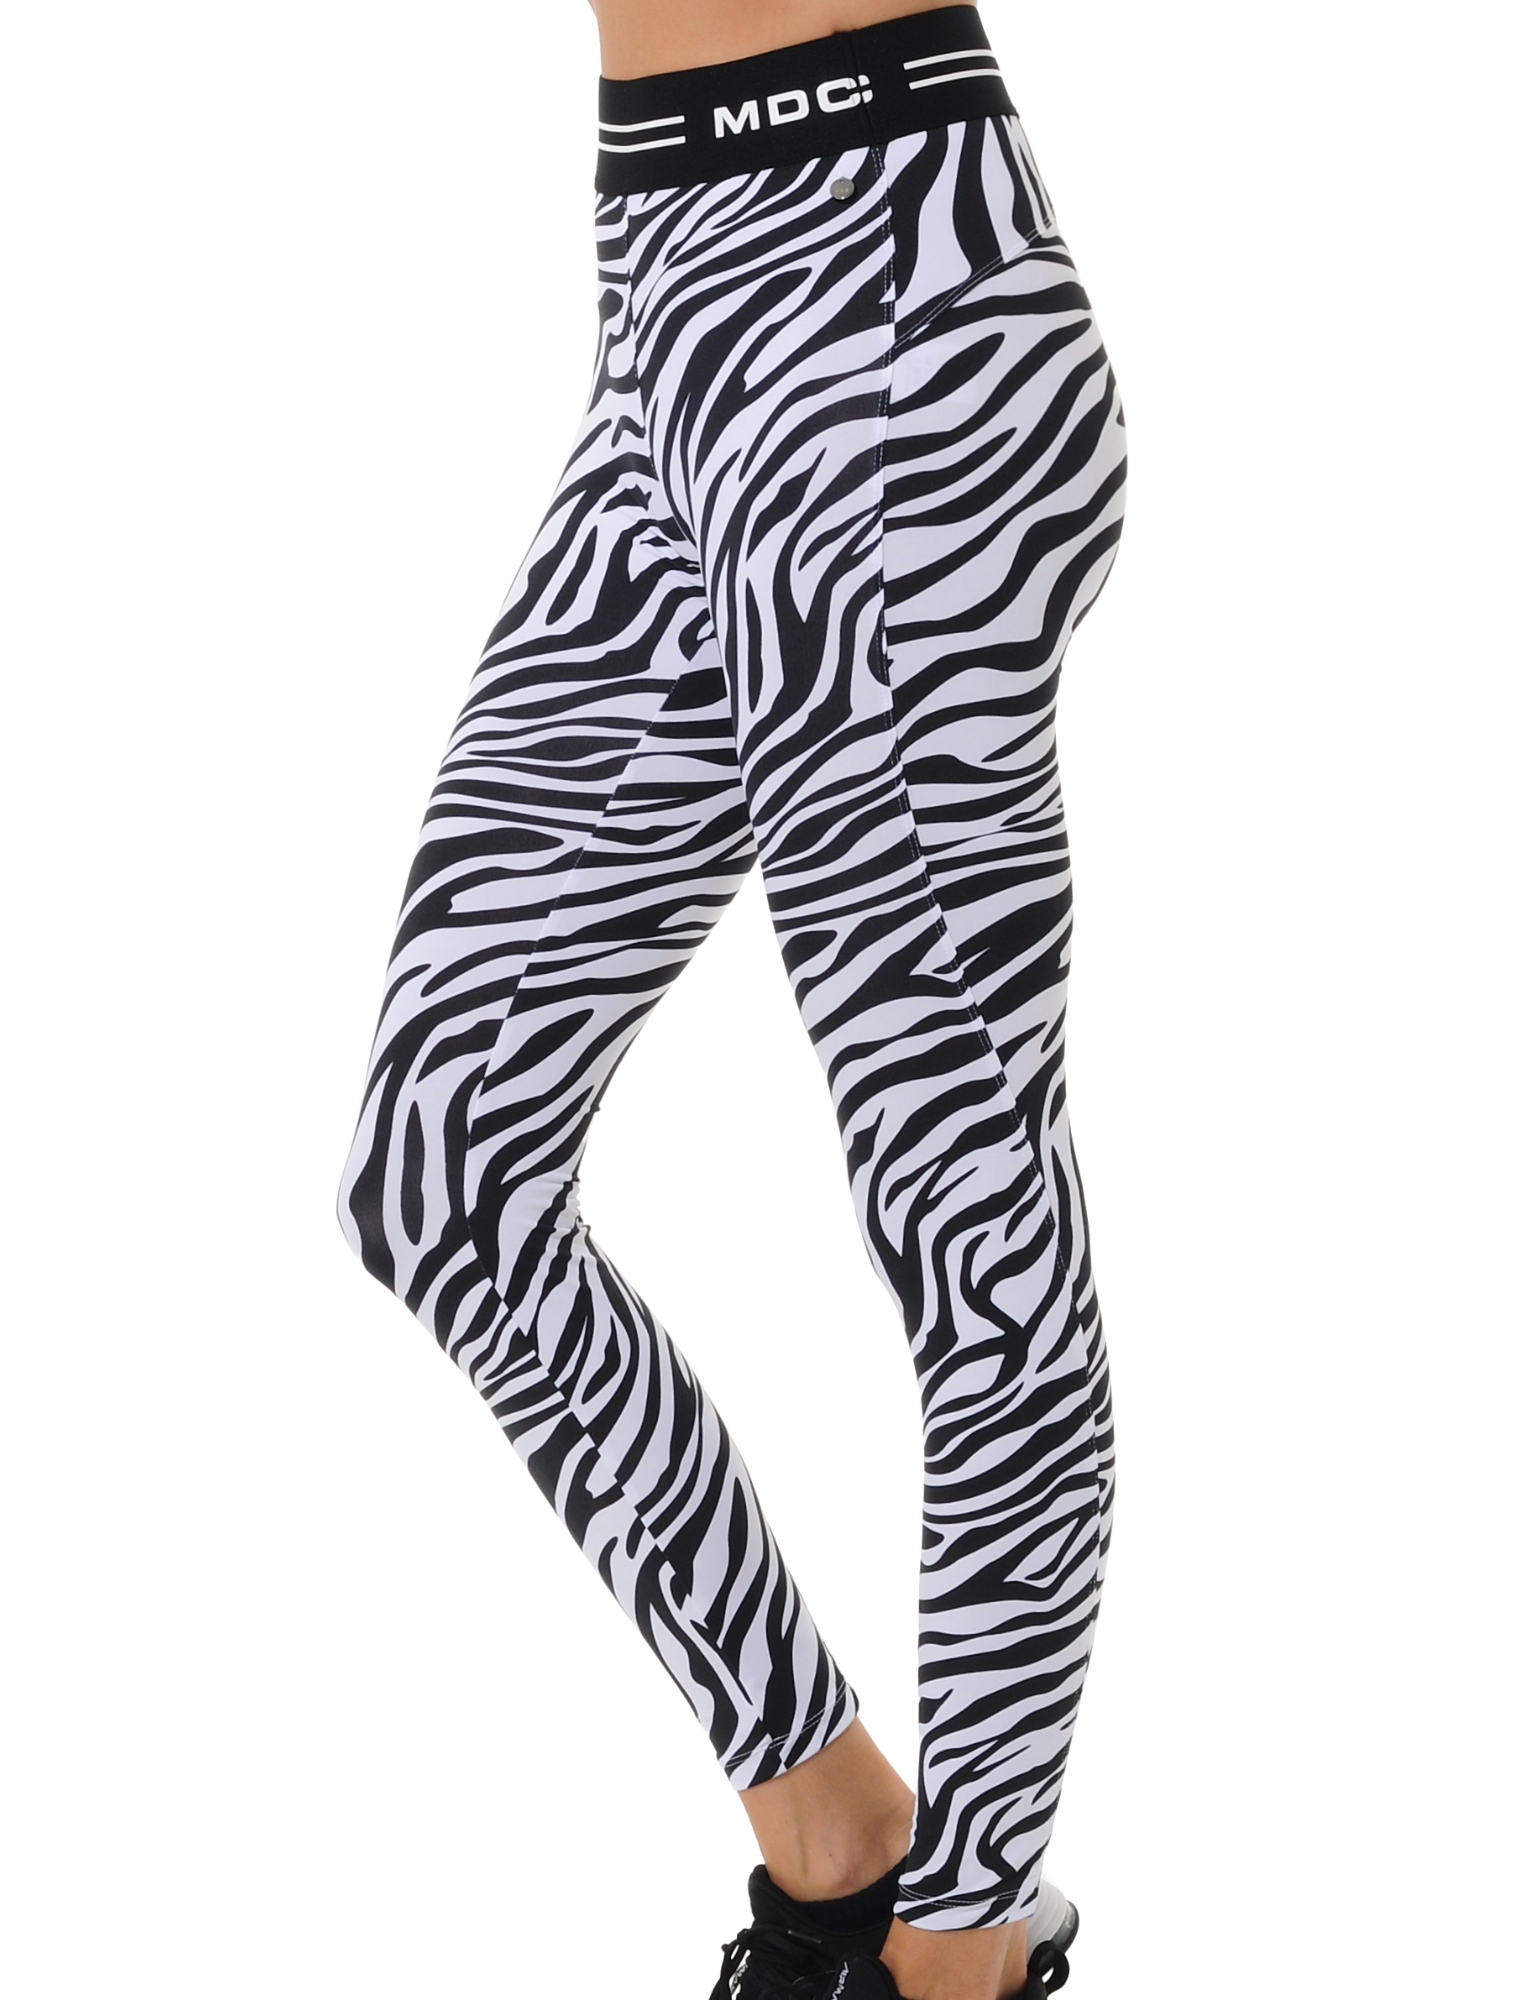 Zebra print tights black/white